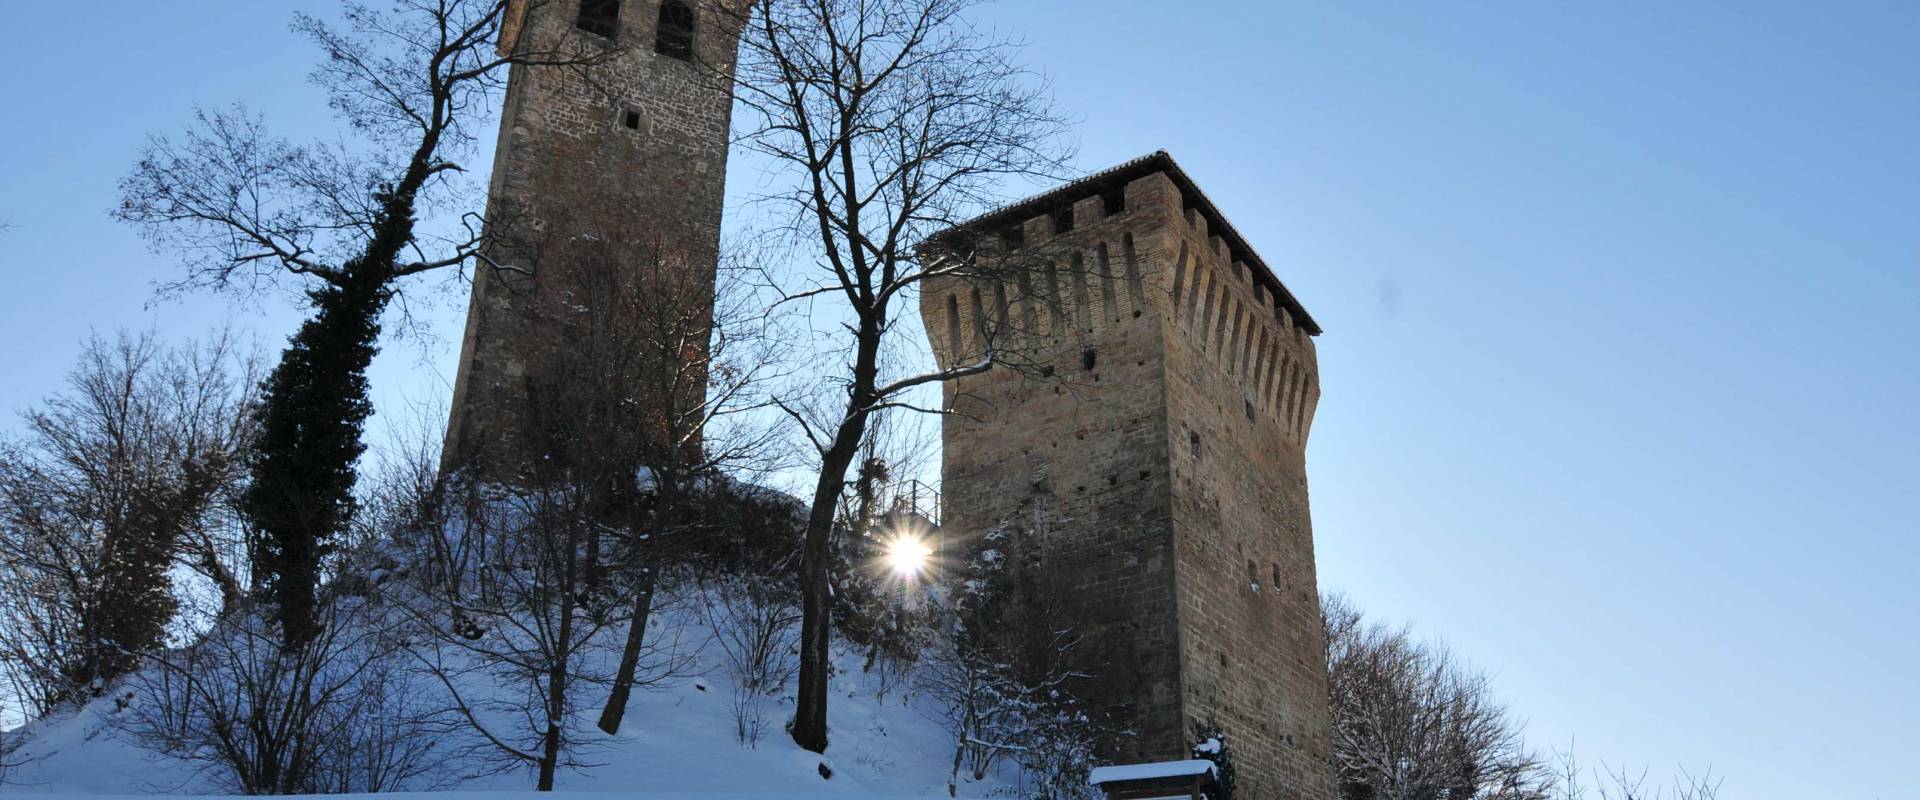 Il Castello medioevale di Sarzano foto di Lugarex